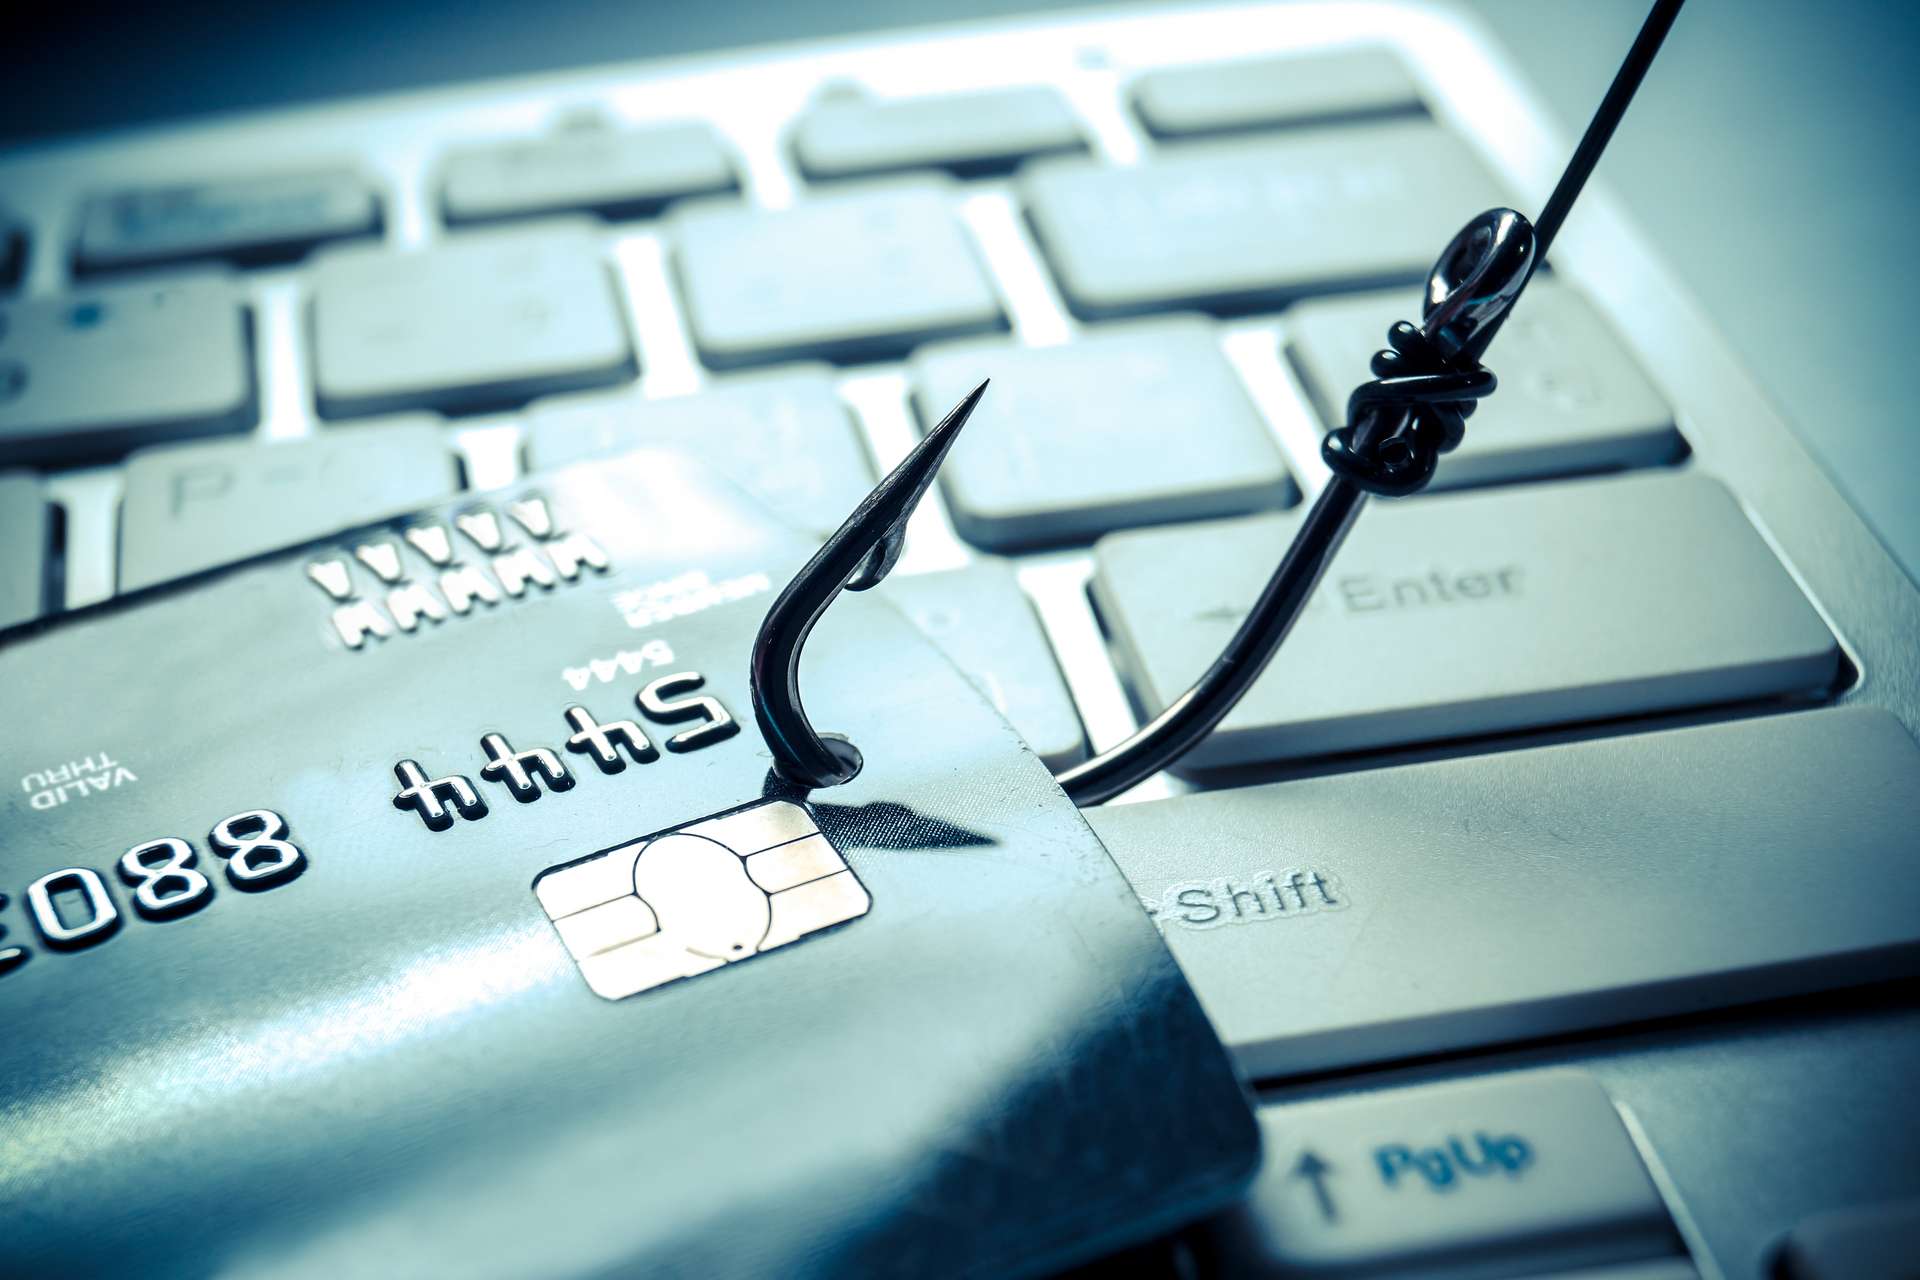 Quelles sont les 5 techniques de phishing les plus courantes ?